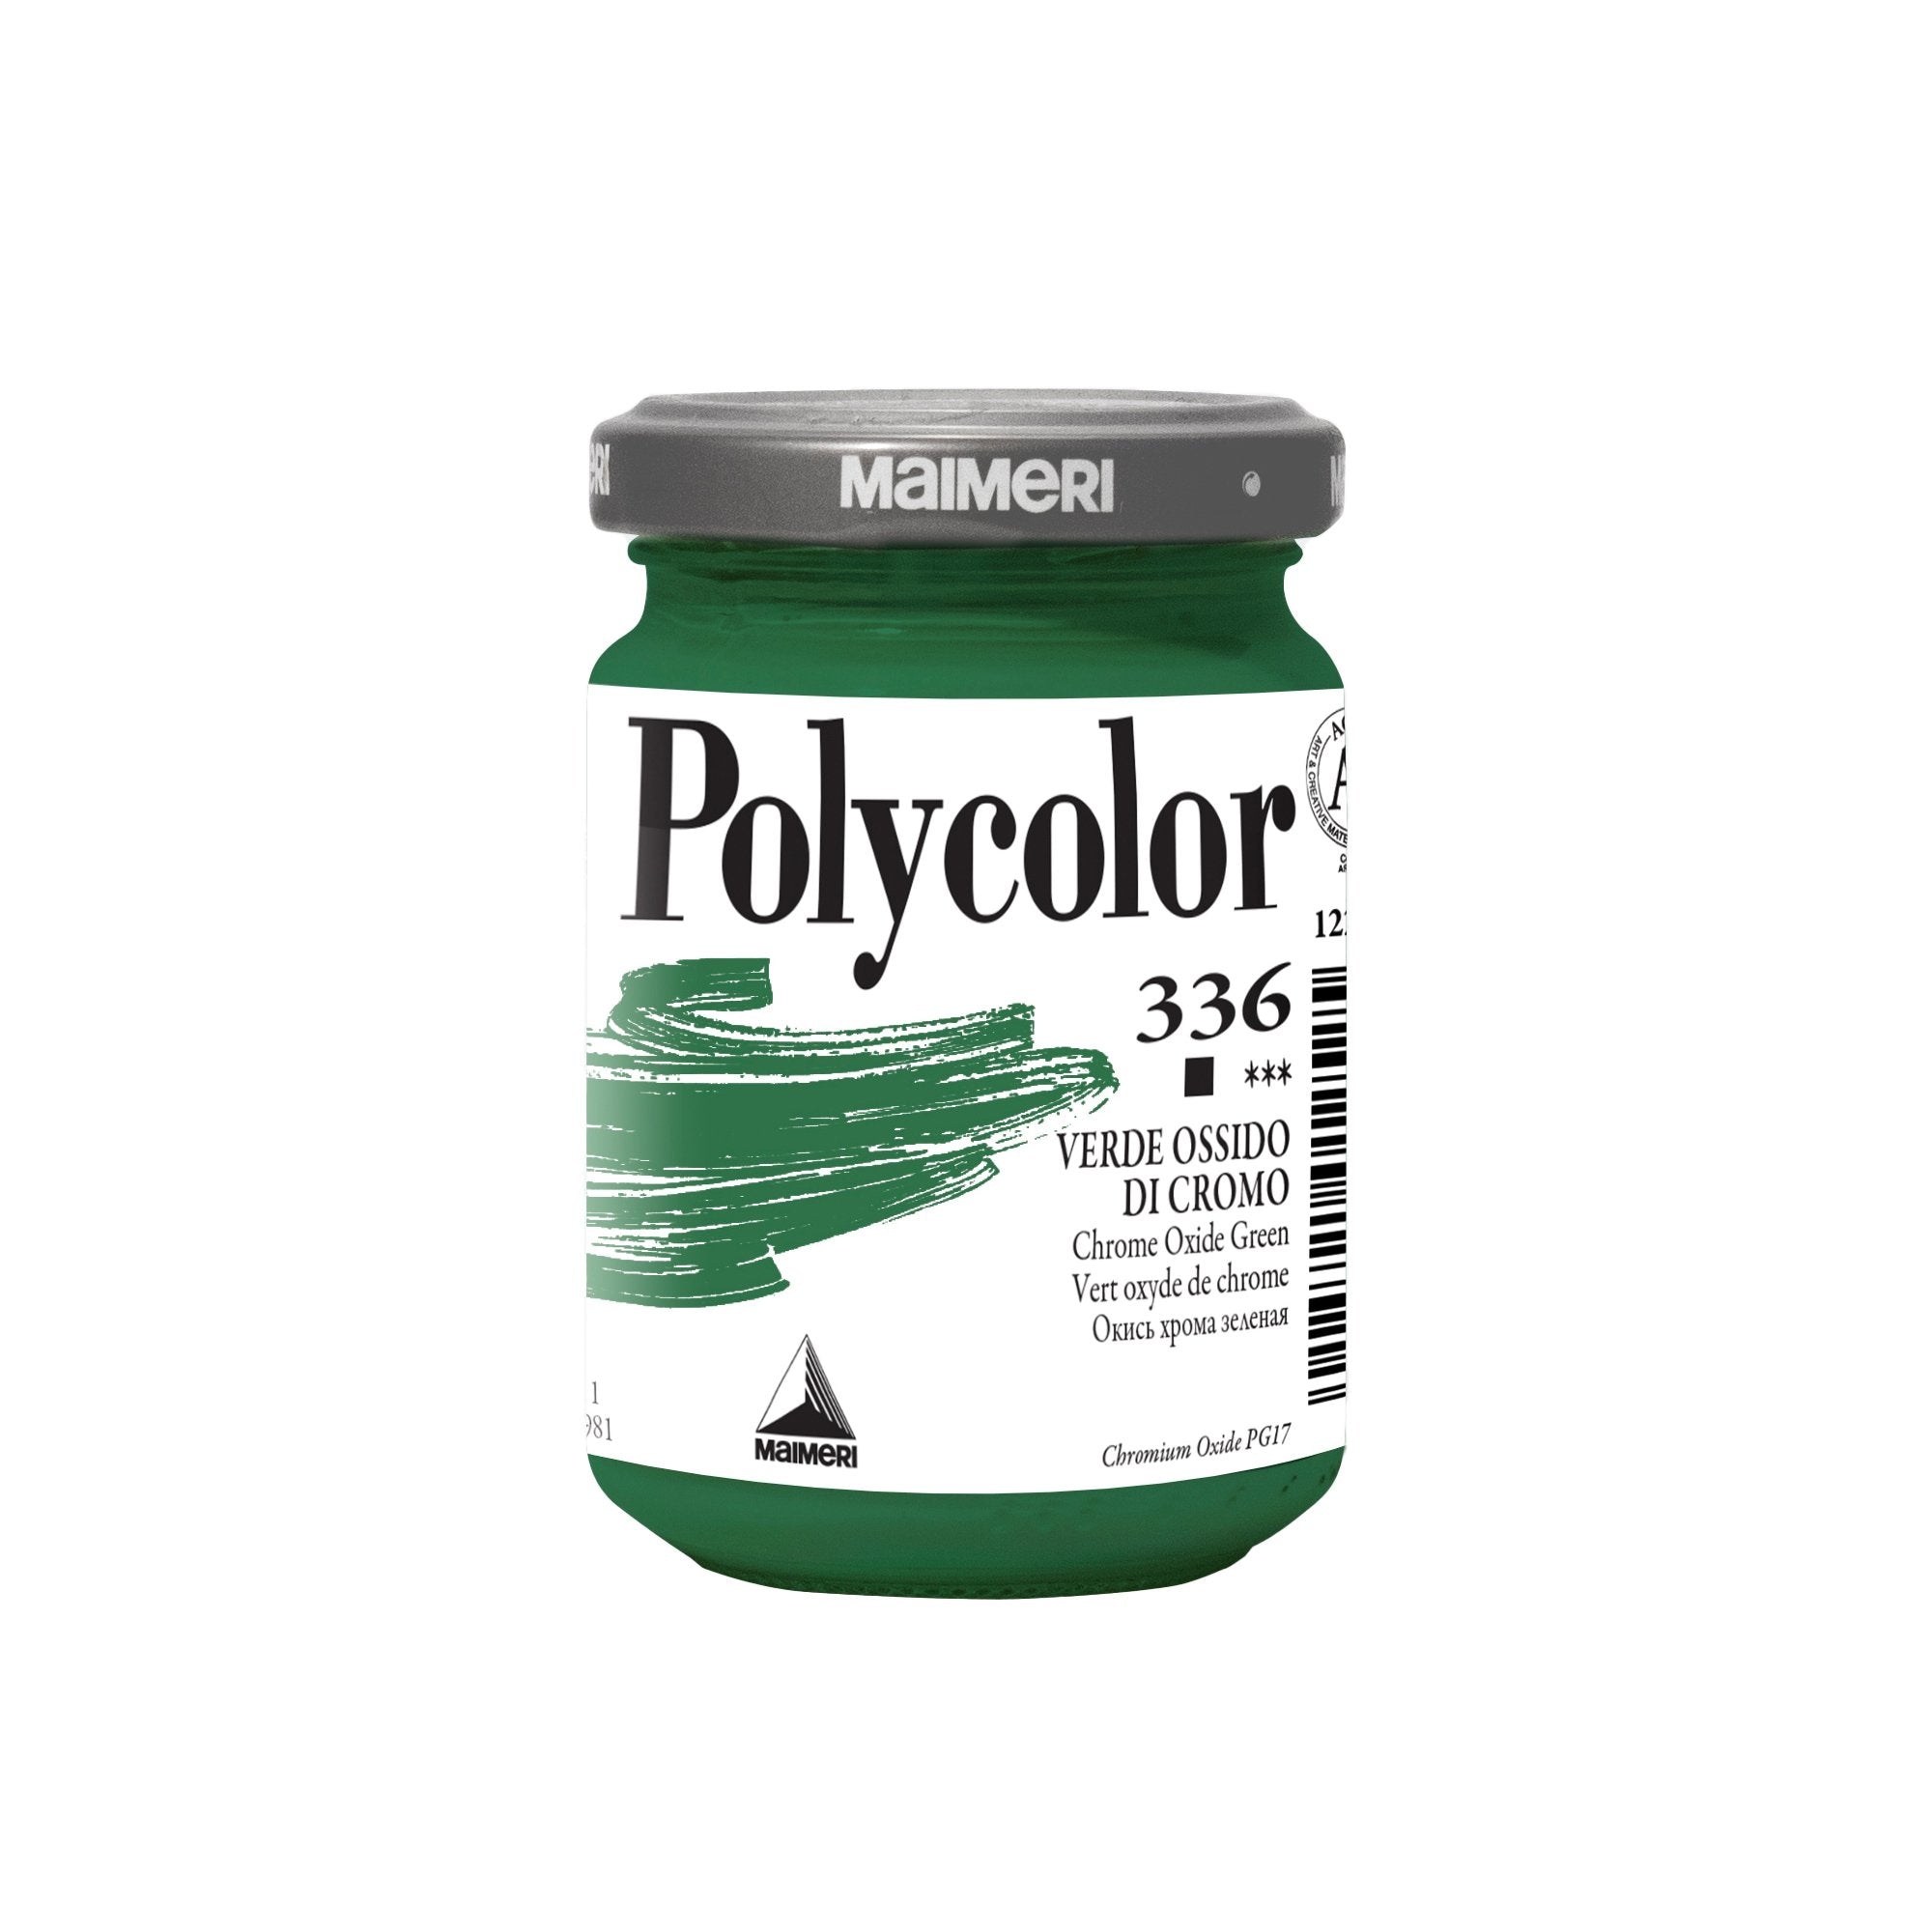 maimeri-colore-vinilico-polycolor-vasetto-140-ml-verde-ossido-cromo